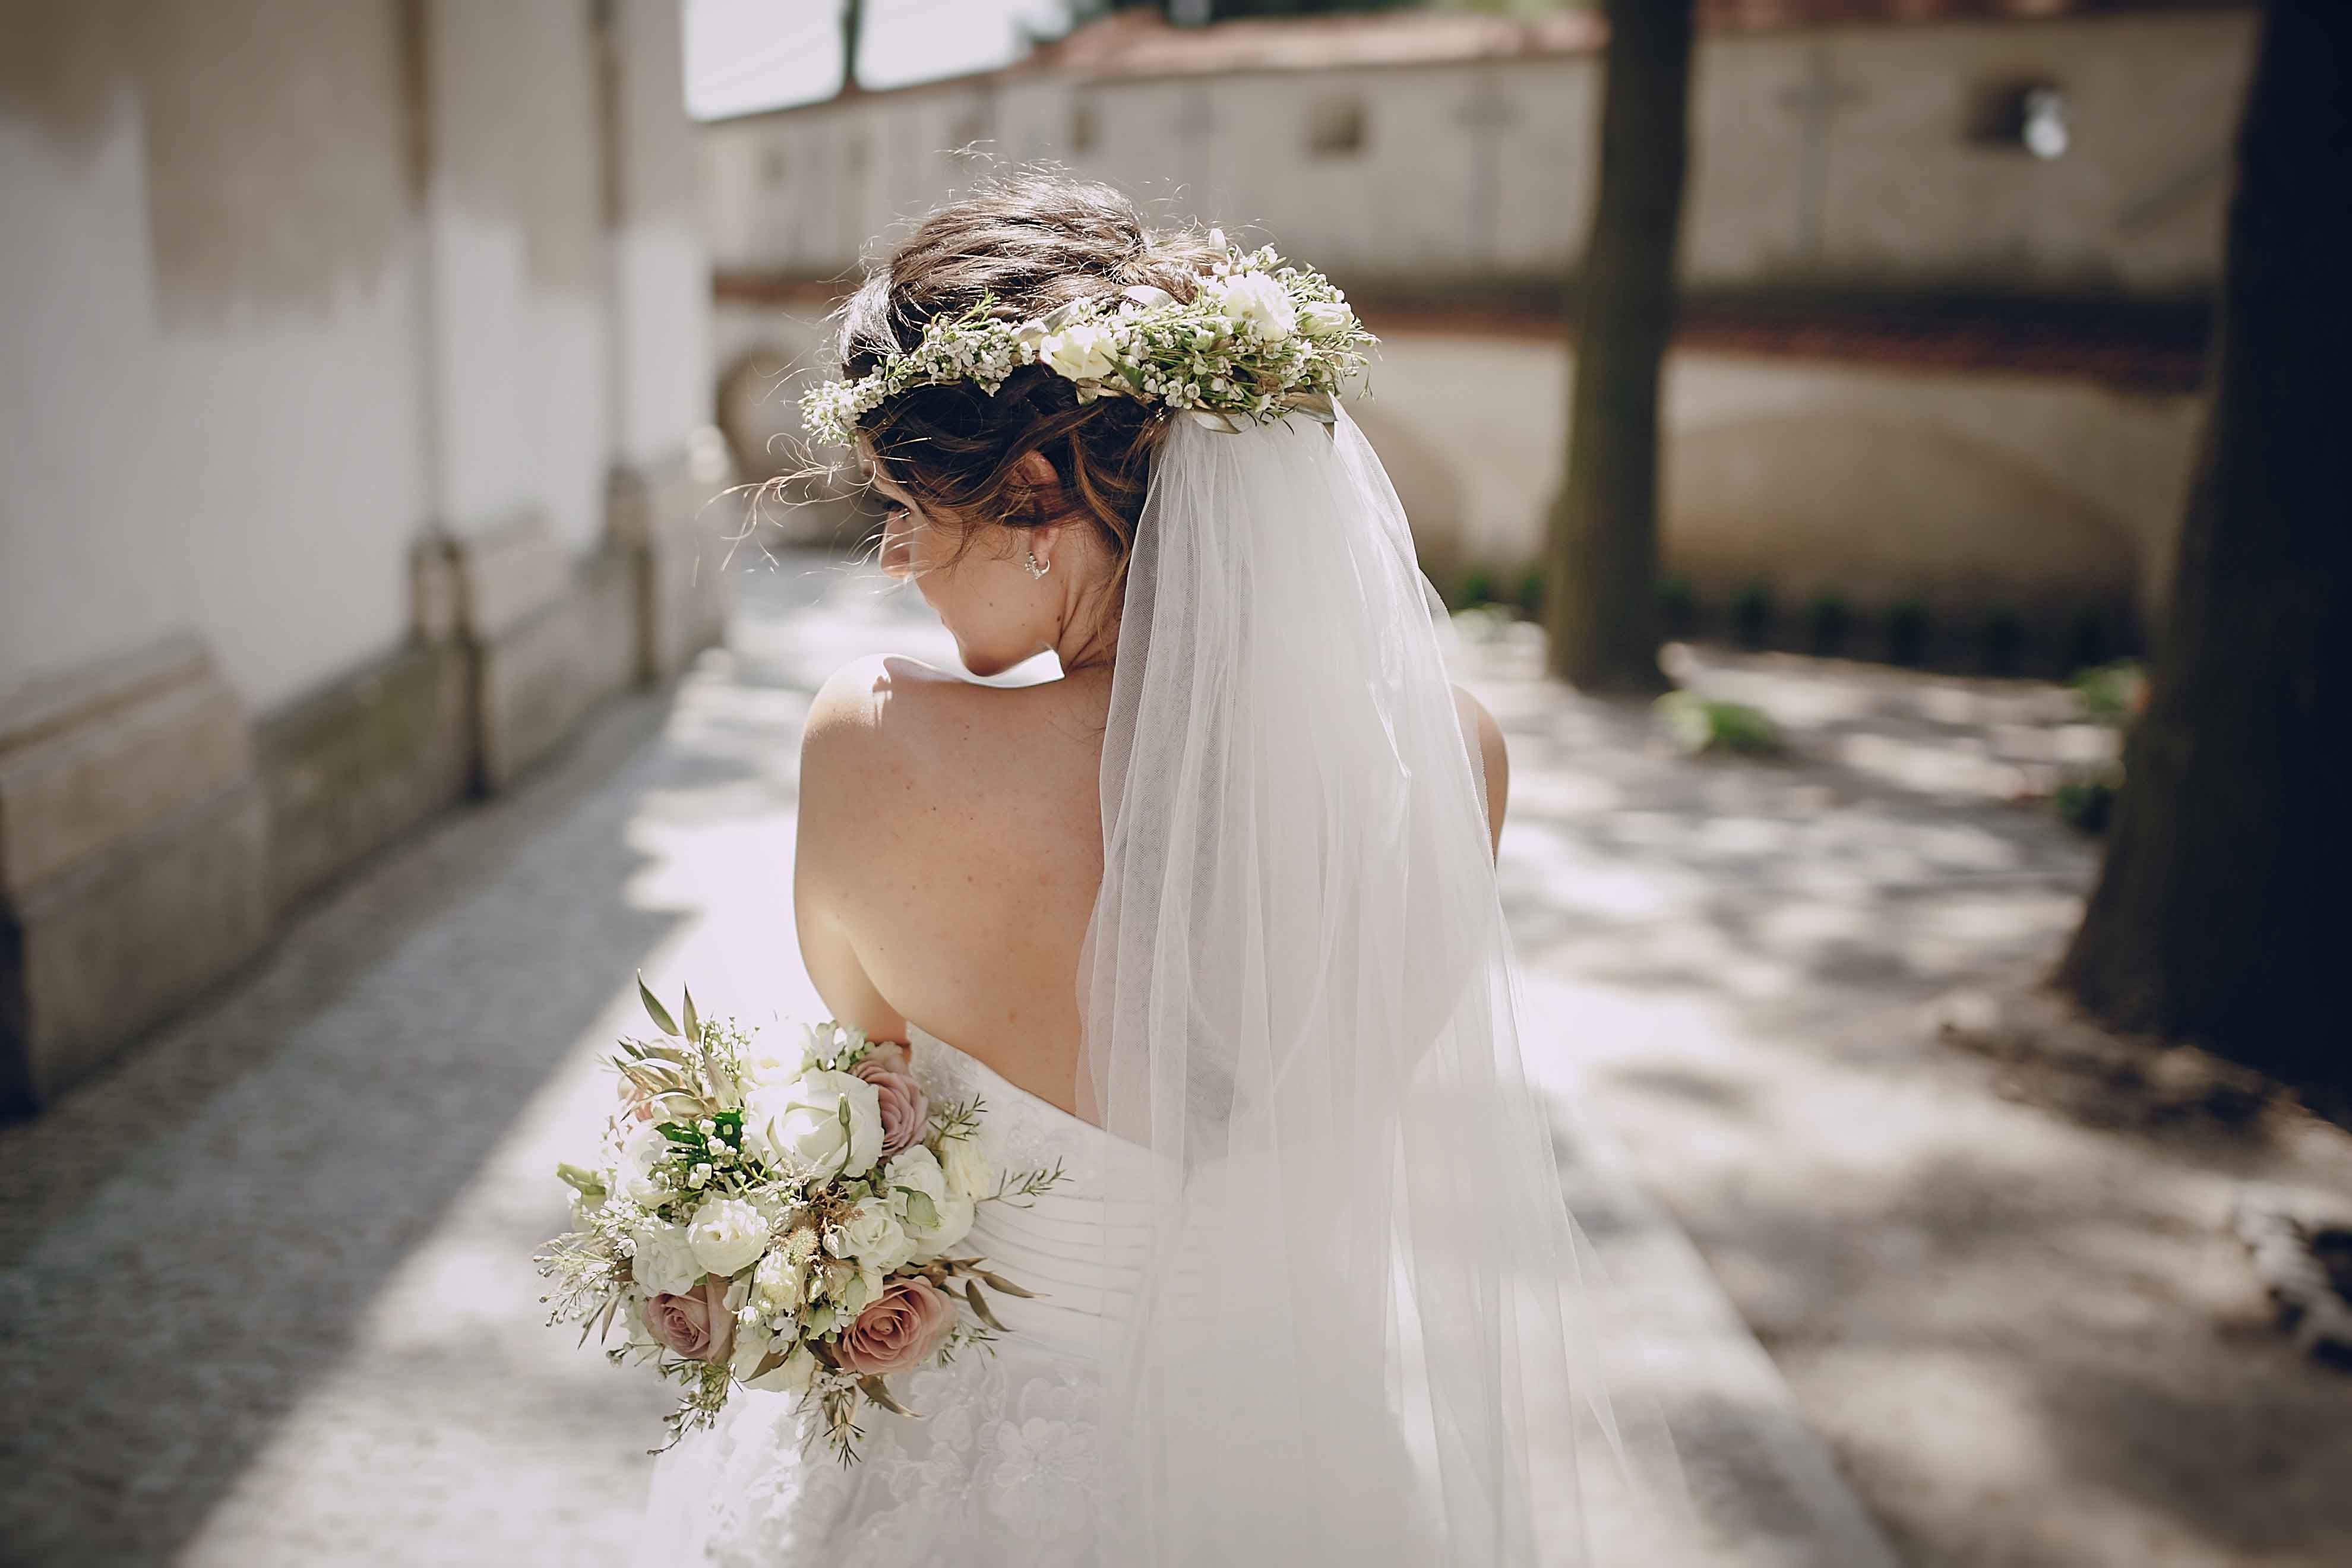 Checkliste für die Hochzeit: Frisörtermin für Braut und Bräutigam